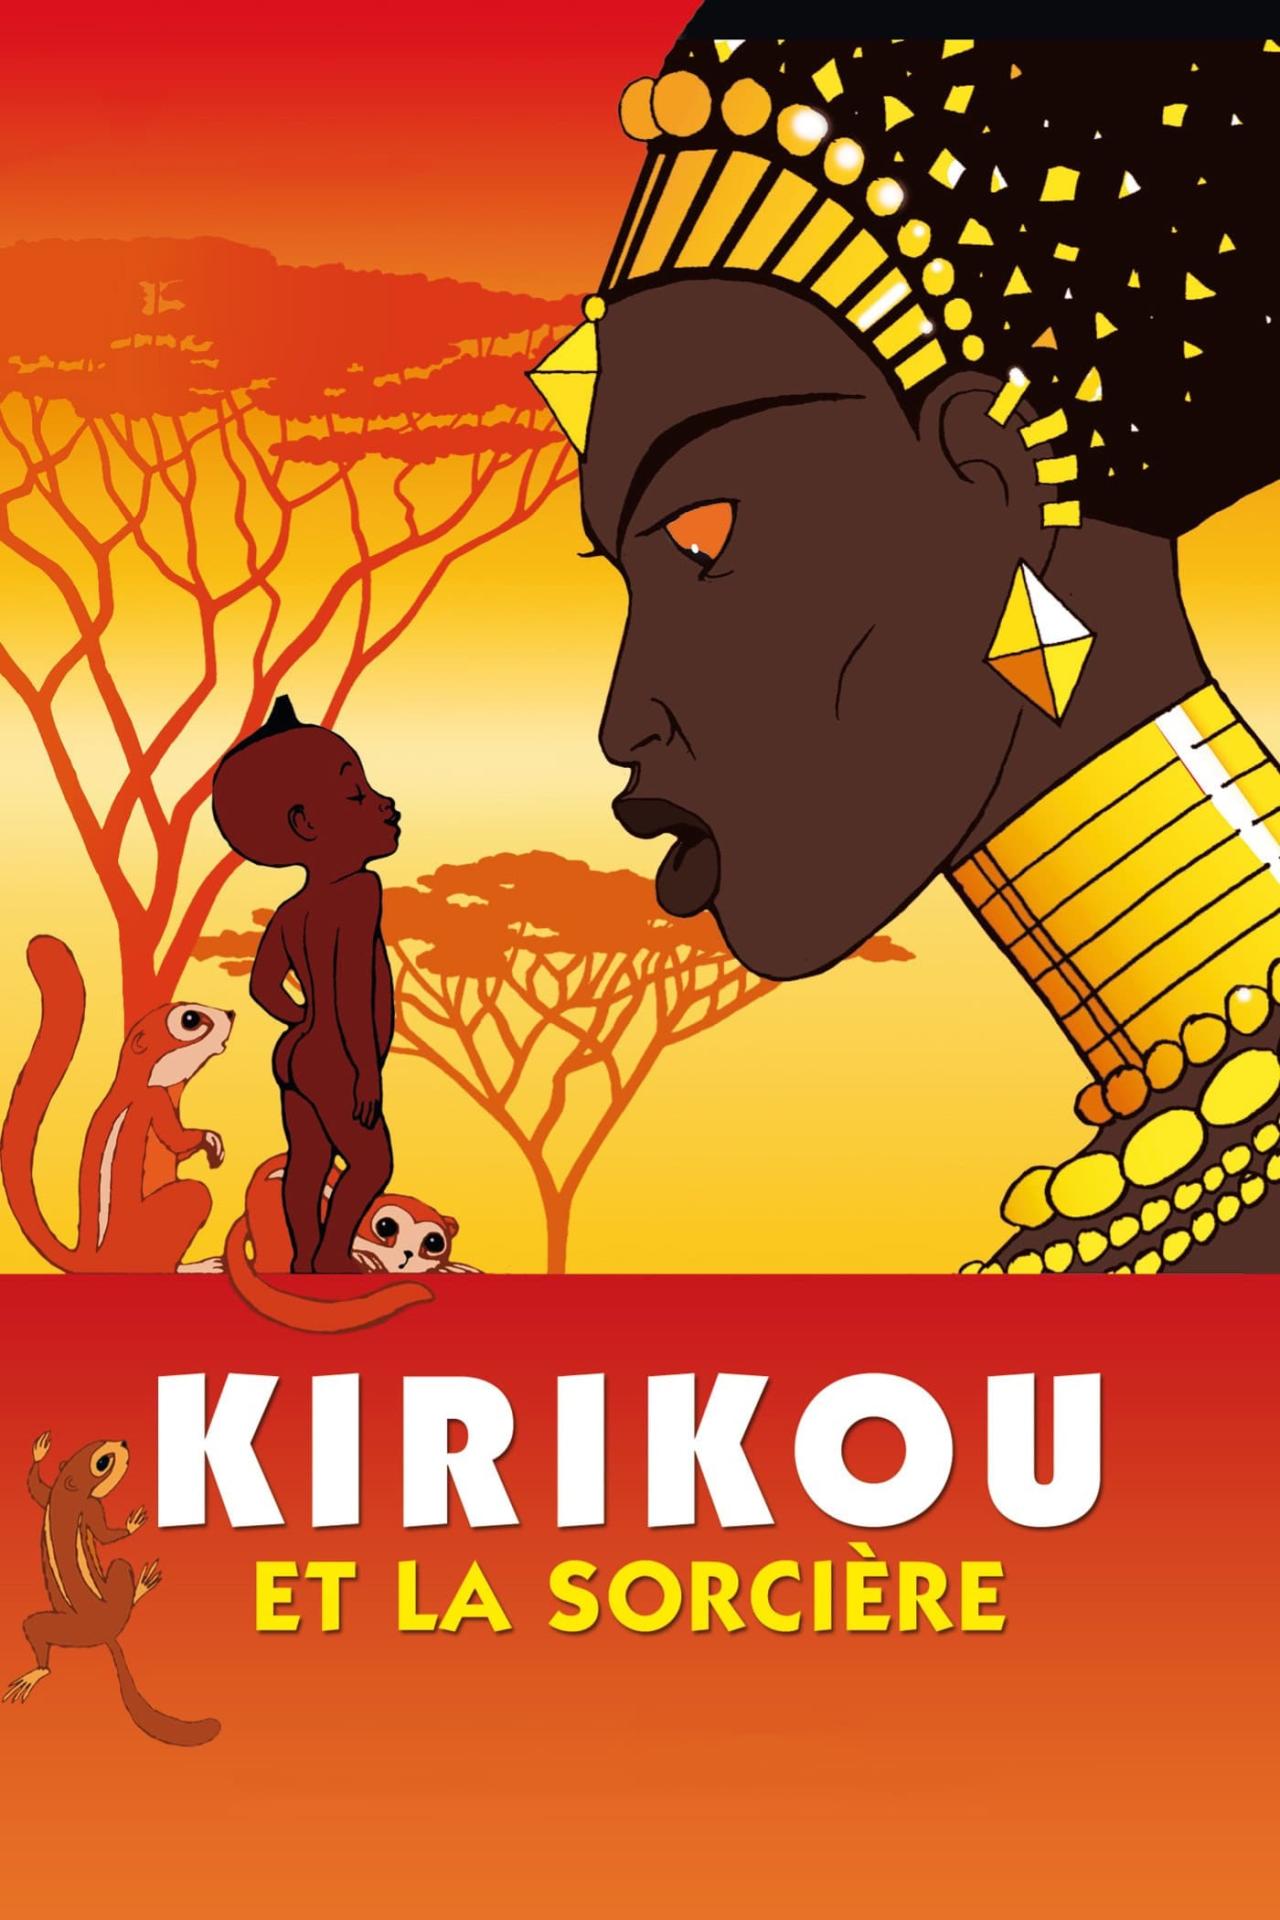 Kirikou et la sorcière est-il disponible sur Netflix ou autre ?